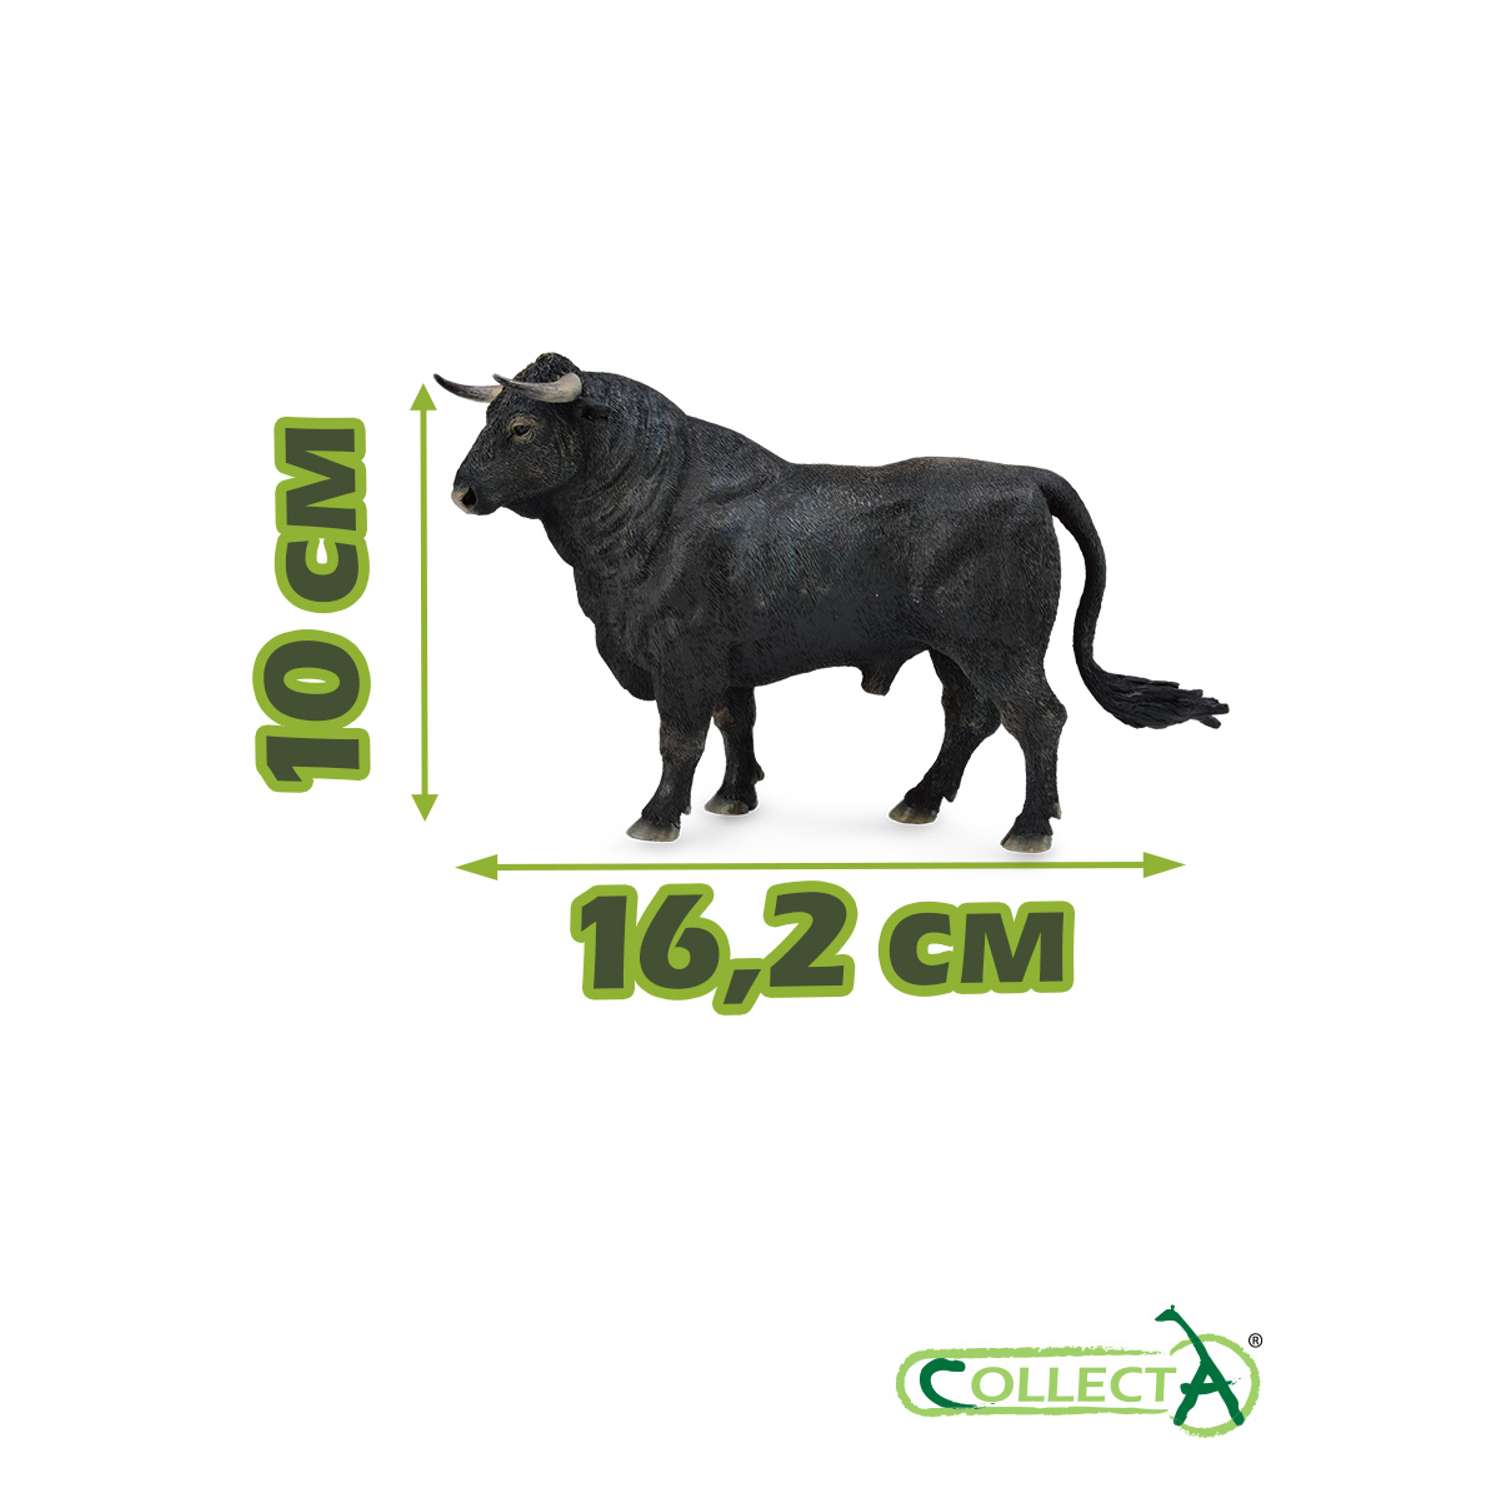 Фигурка животного Collecta Испанский бык - фото 2